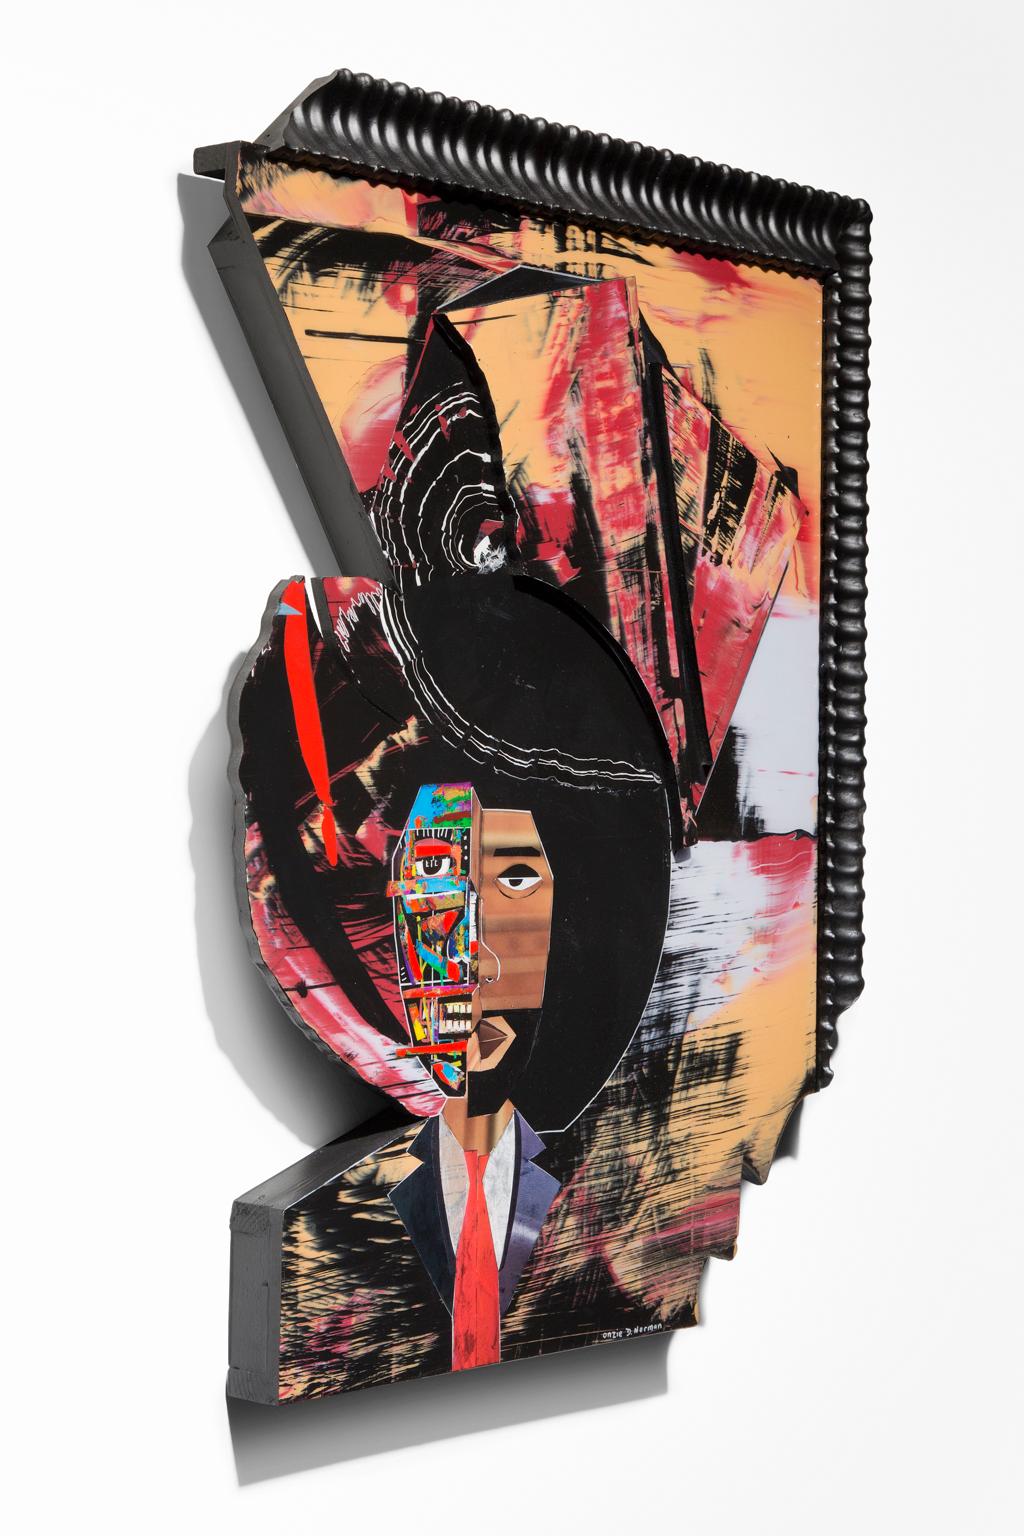 « Capacité mentale », technique mixte, image figurative d'Amérindienne, couleur emblématique - Painting de Onzie Norman